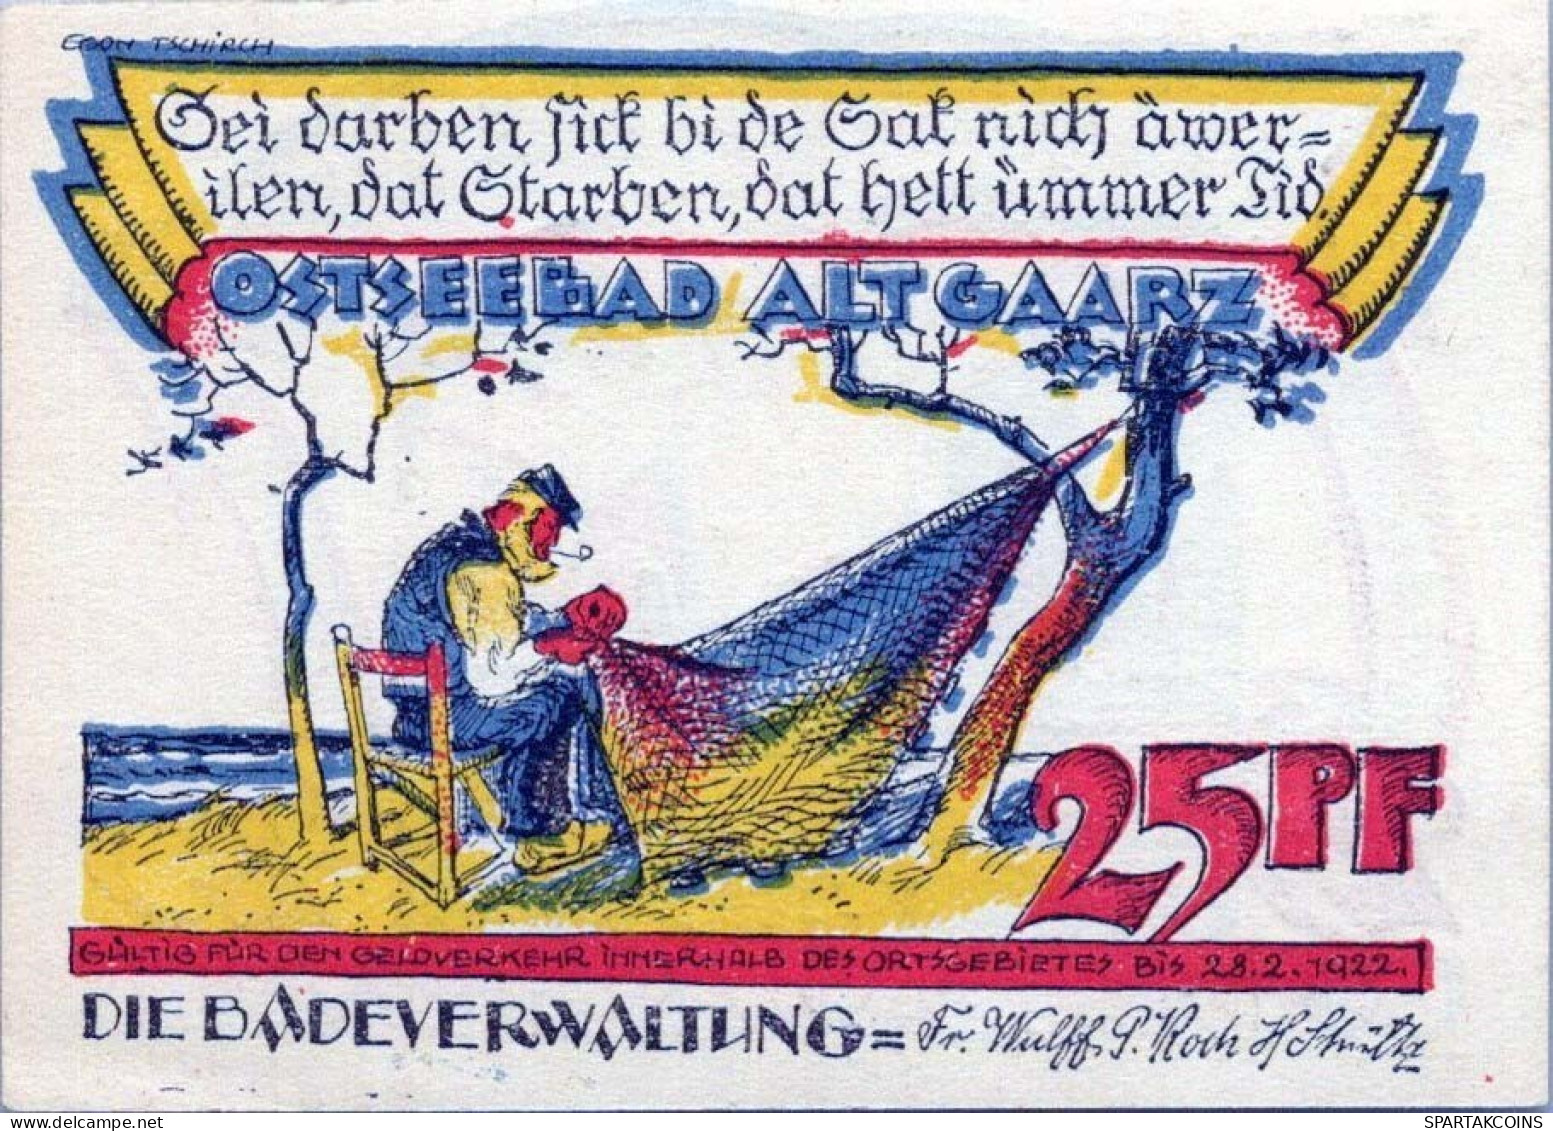 25 PFENNIG 1922 Stadt ALT GAARZ Mecklenburg-Schwerin UNC DEUTSCHLAND #PA047 - [11] Emisiones Locales